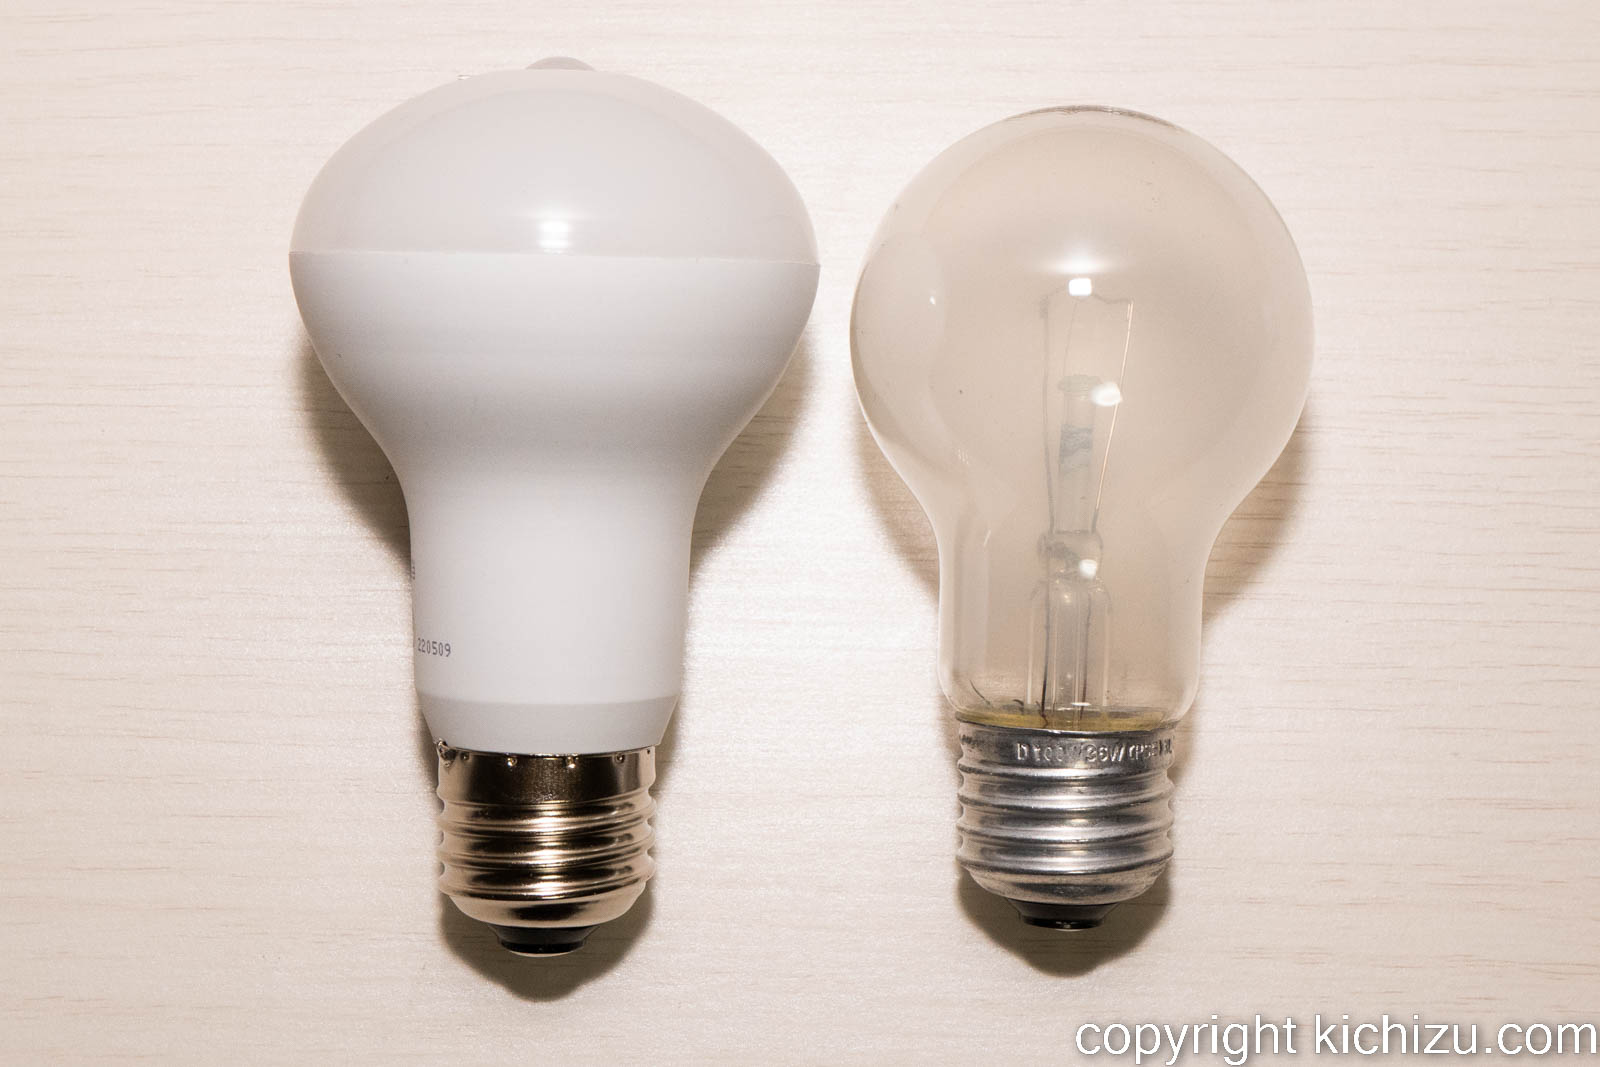 白熱シリカ電球と人感センサー付き LED 電球との比較